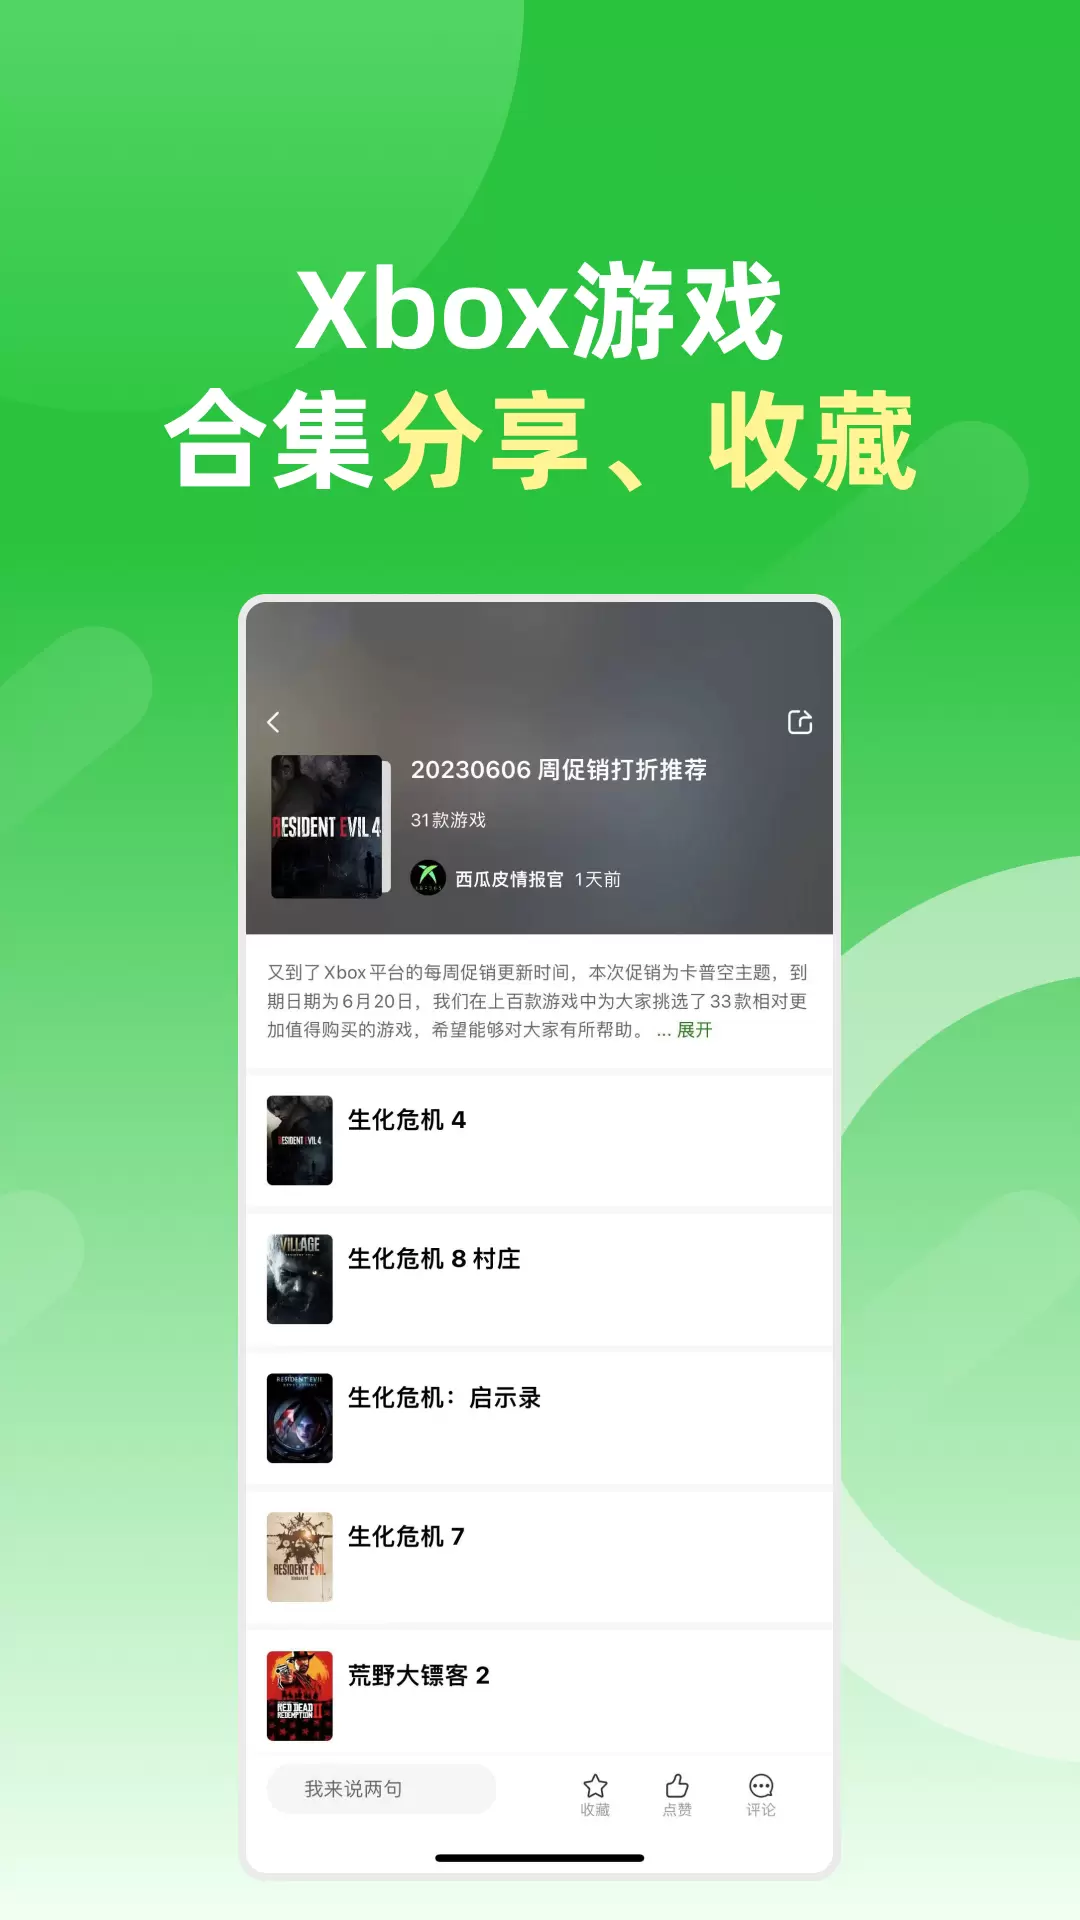 西瓜皮365-Xbox中文社区 v1.4.3免费版截图3